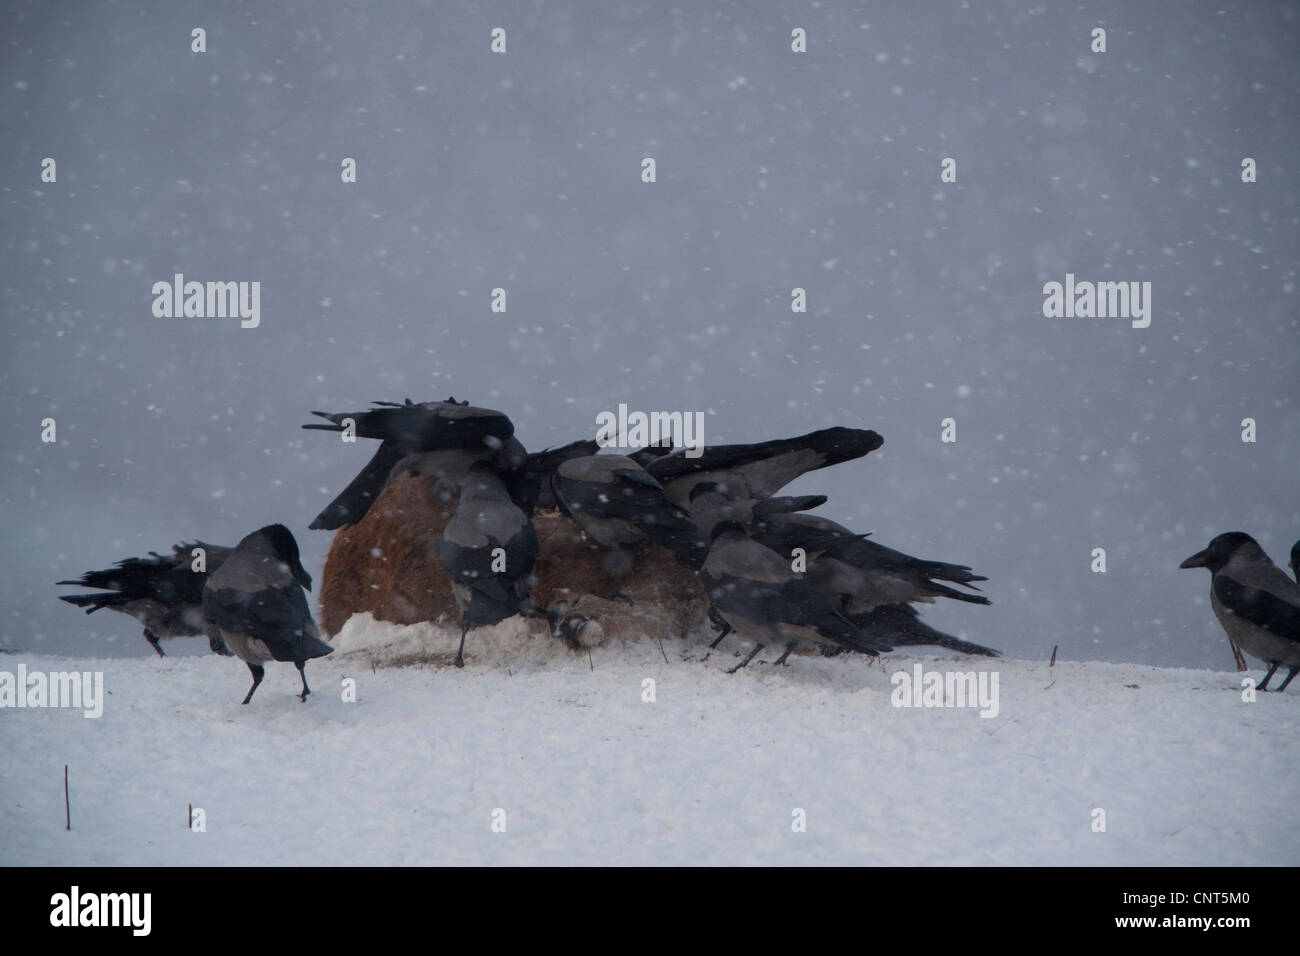 Hooded crow (Corvus corone cornix), volée de corbeaux au cadavre dans la neige, Norvège Banque D'Images